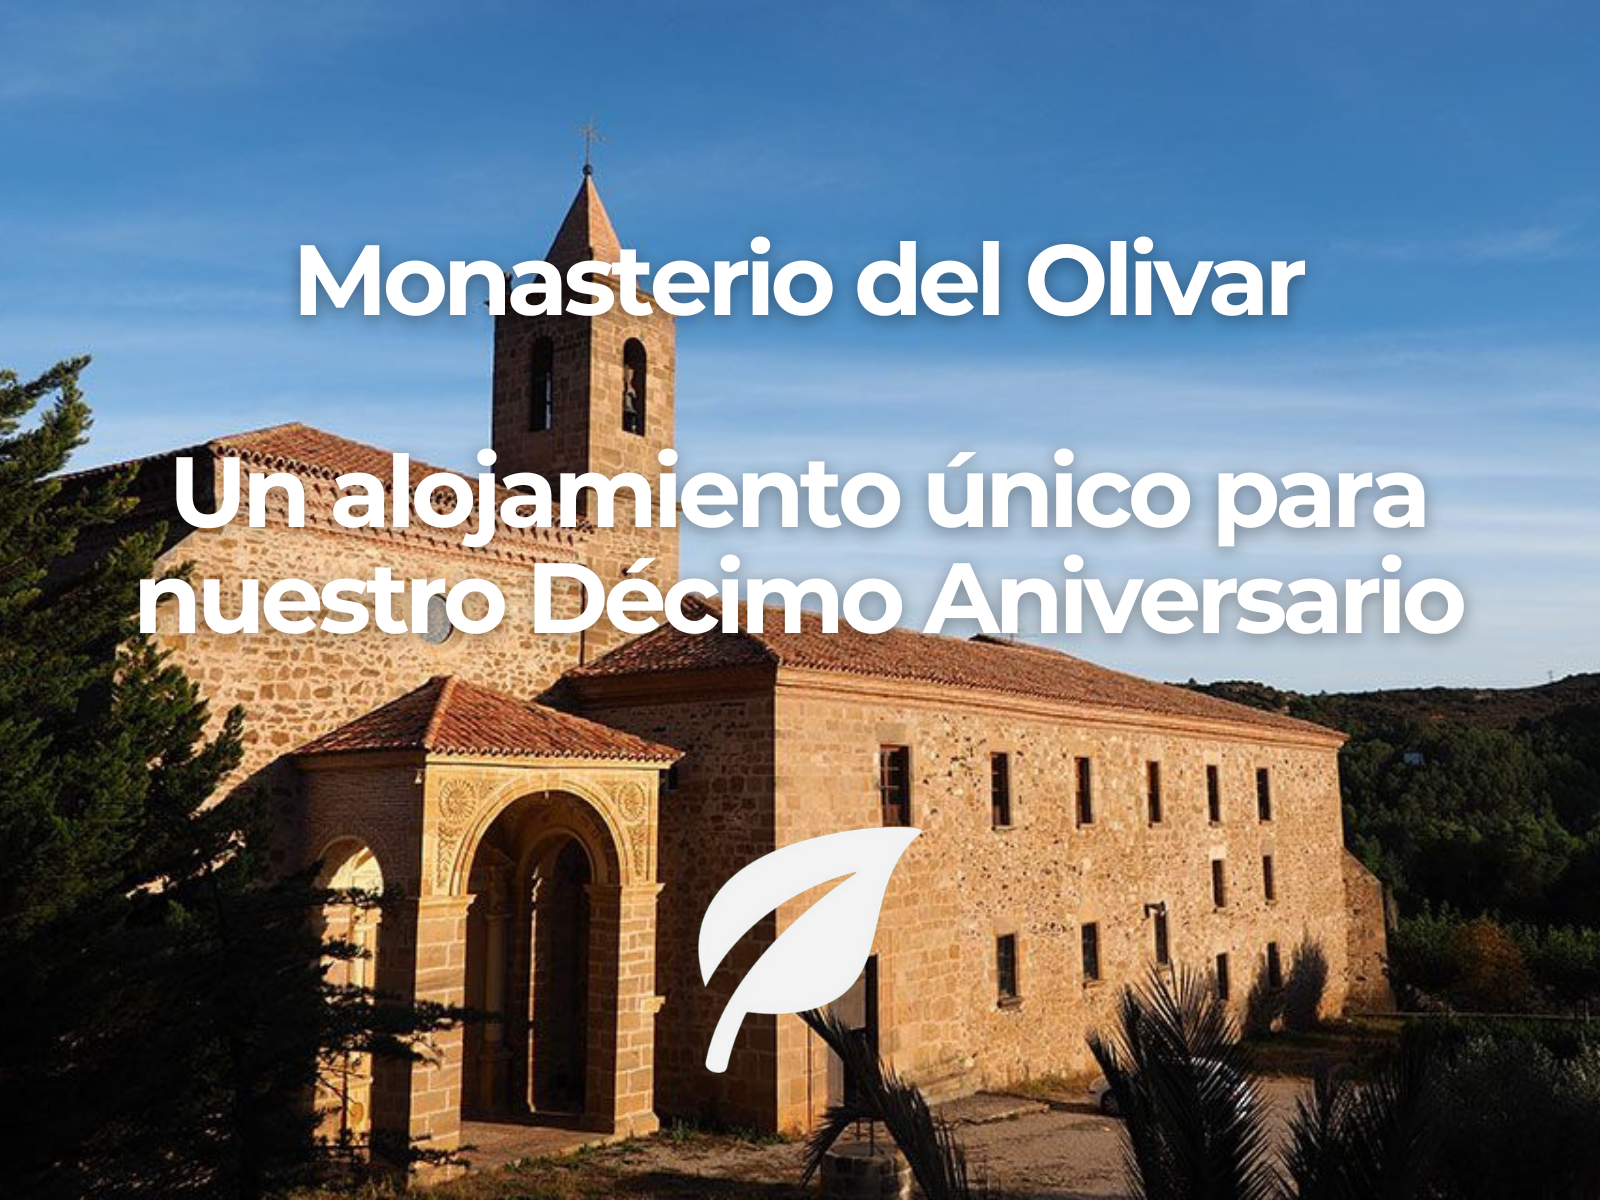 Fachada principal del Monasterio del Olivar